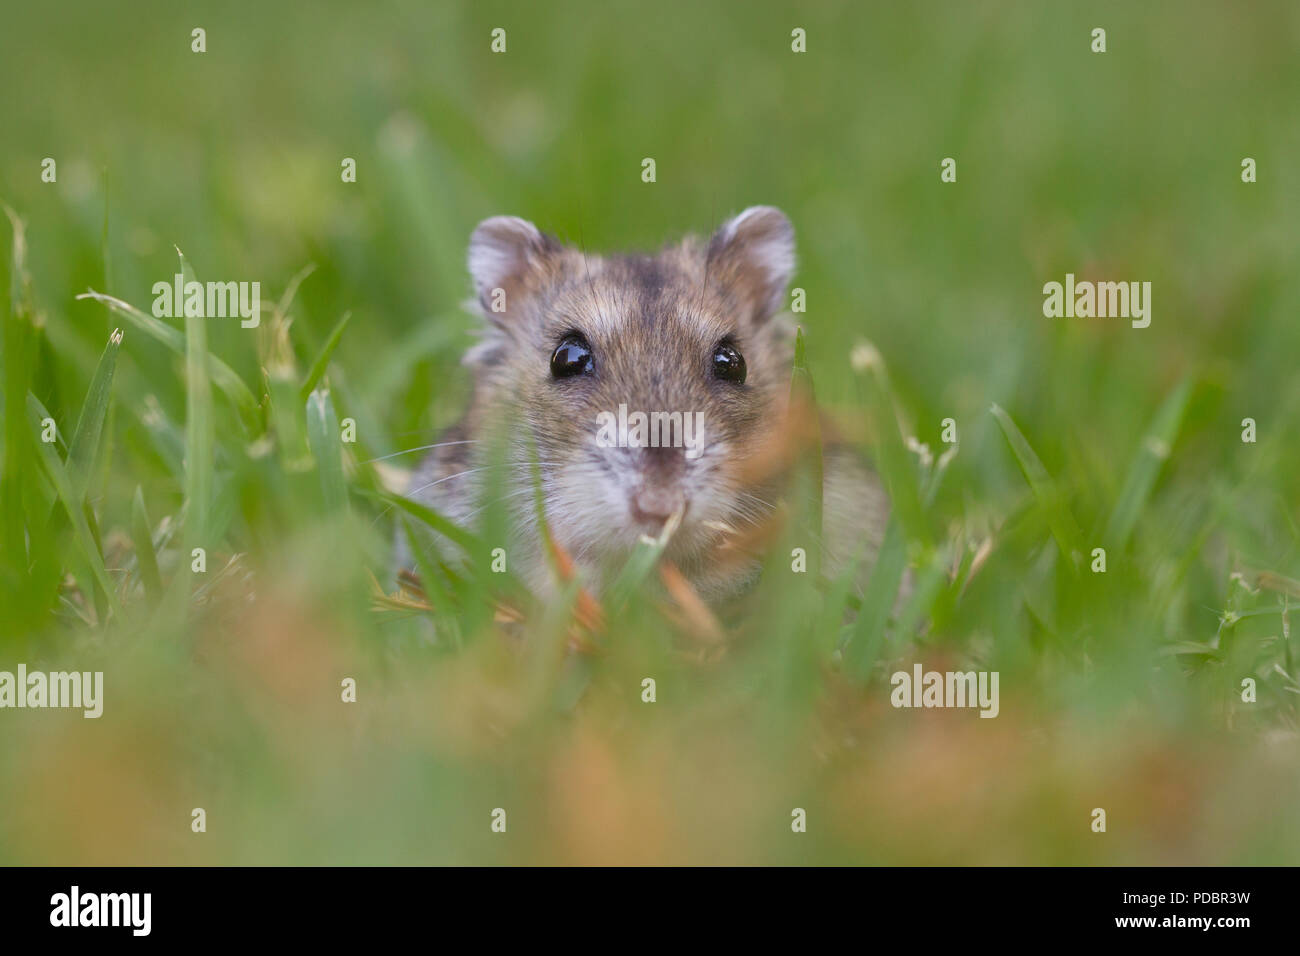 Nahaufnahme und selektiven Fokus eines Dshungarischen Zwerghamster (Phodopus sungorus), auch als die Sibirischen hamster bekannt, auf dem Rasen. In Israel im Juli fotografiert. Stockfoto